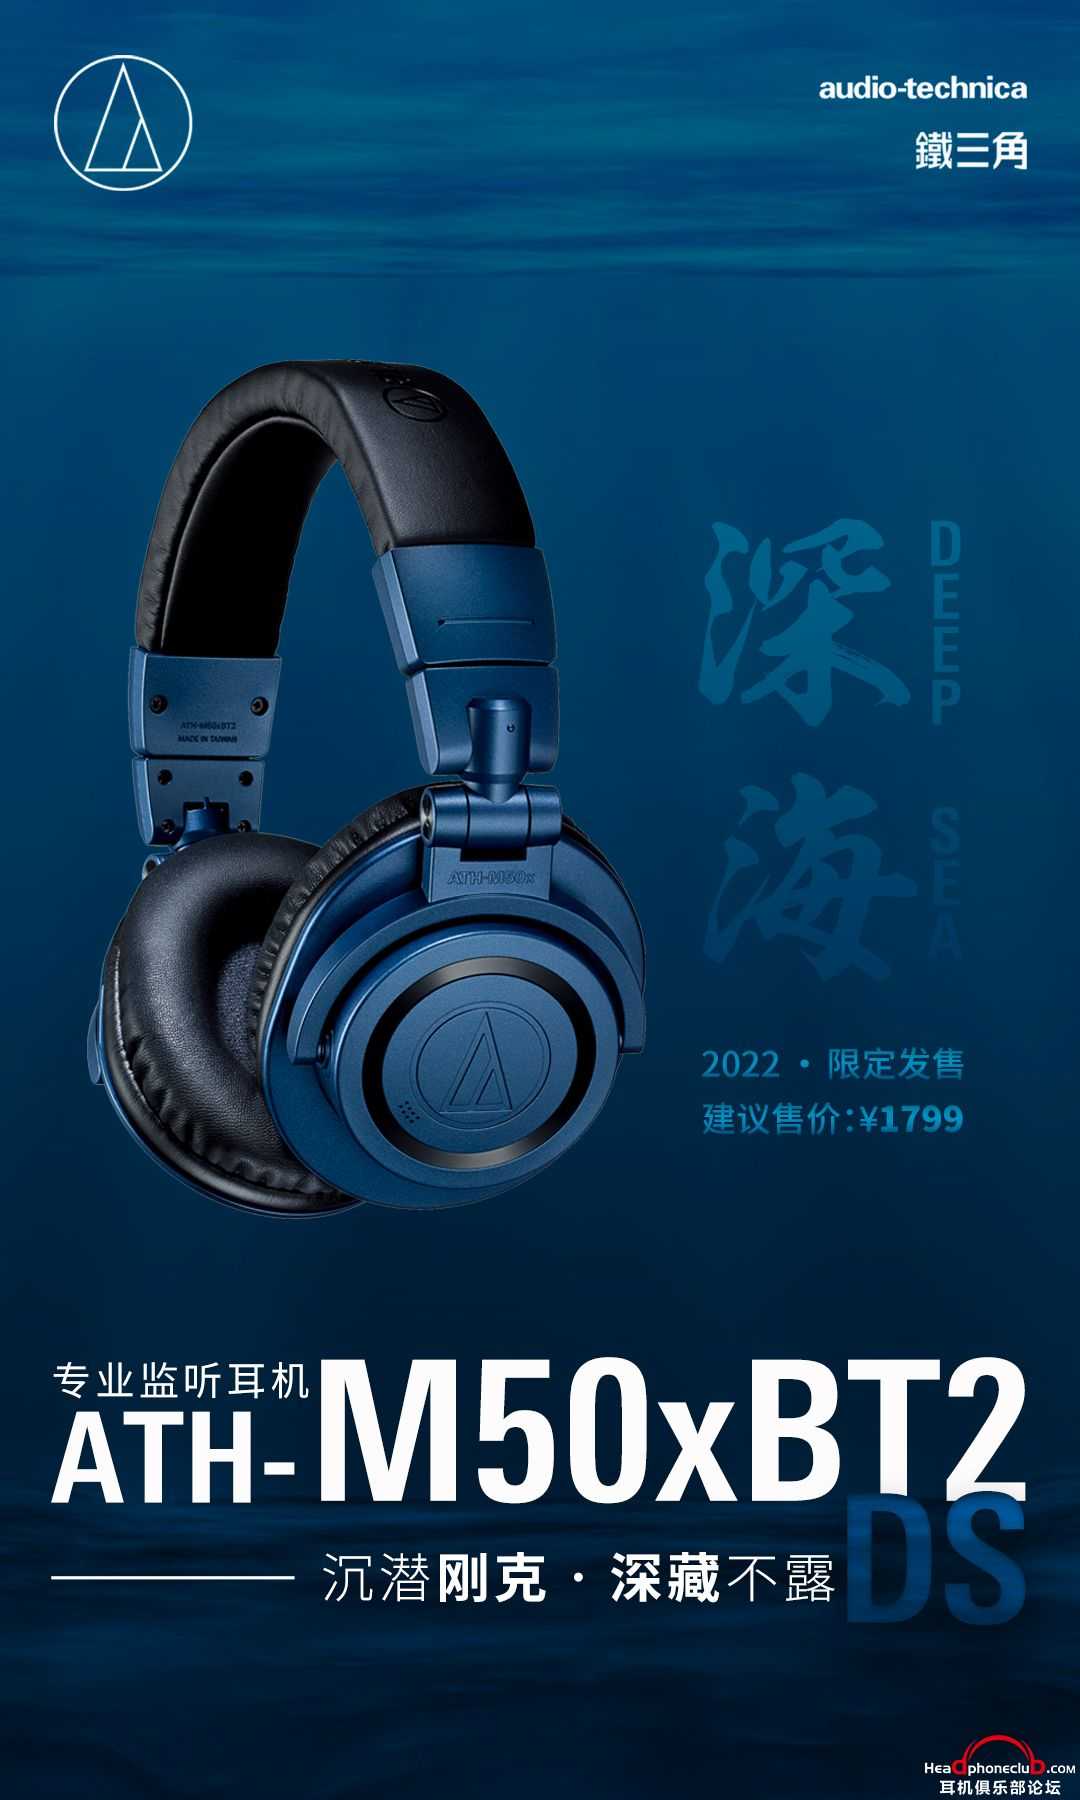 2022年度限定！铁三角ATH-M50x DS深海蓝限量上市！ - 台式耳机系统